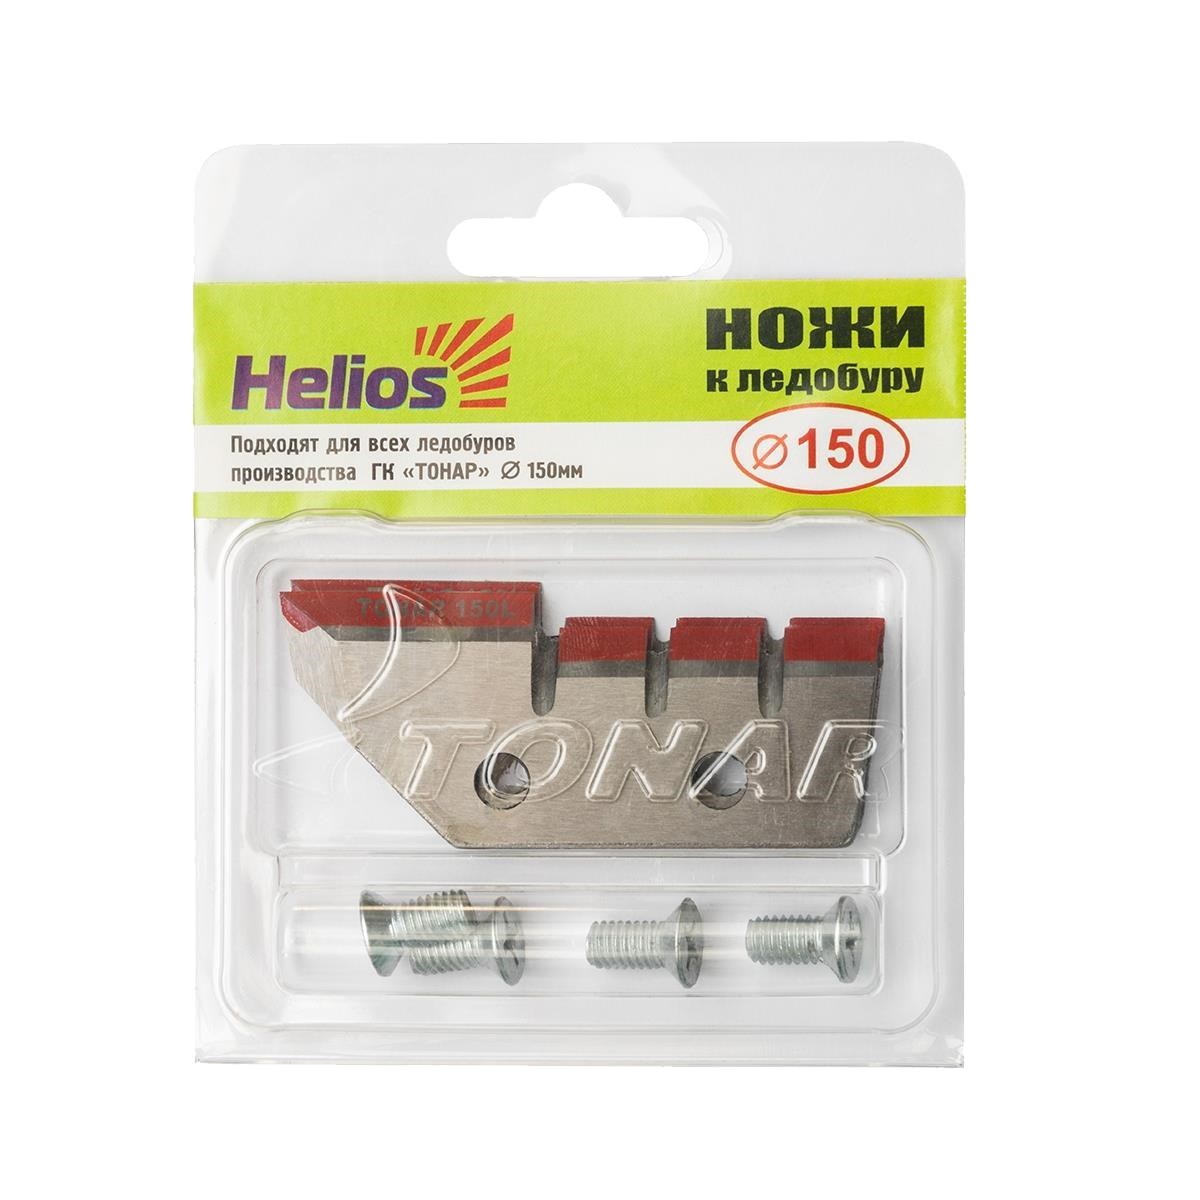 Нож Helios к ледобуру HS-150L прямой левое вращение - фото 1